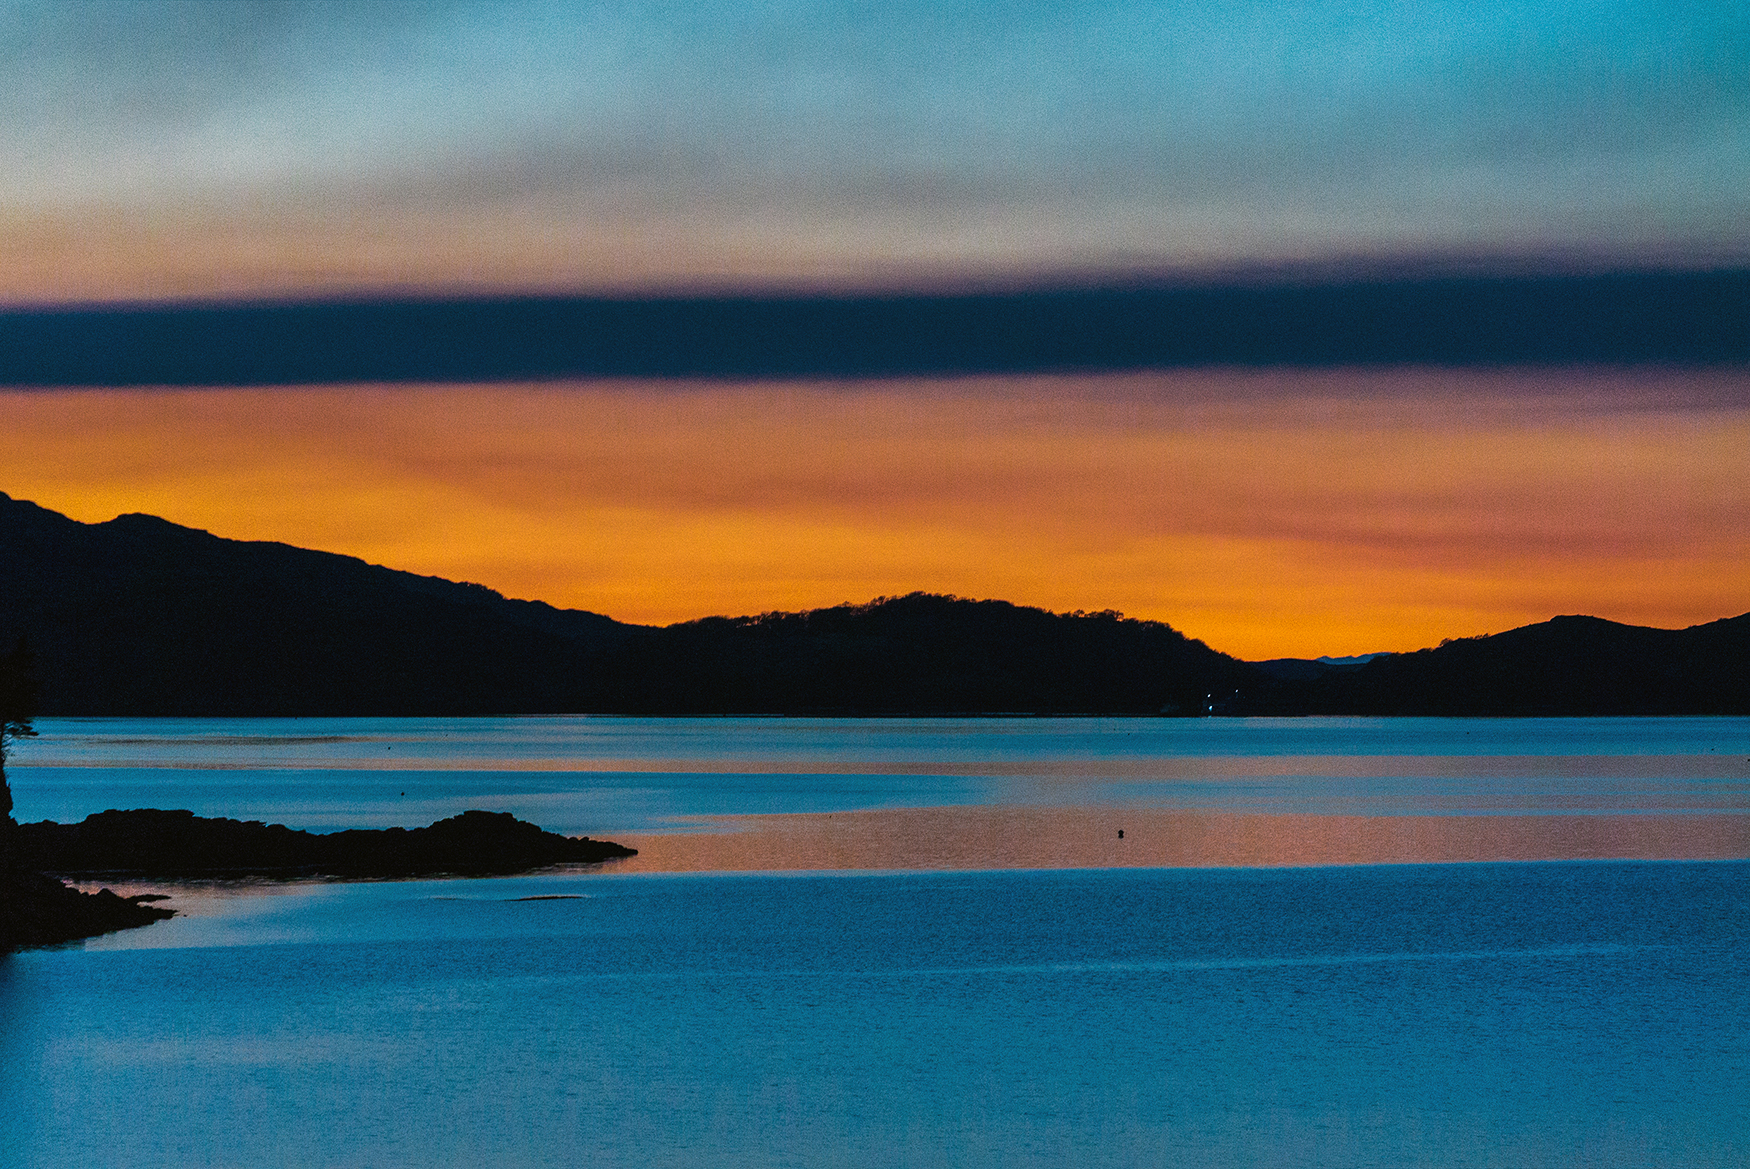 Sunset over Loch Shieldaig